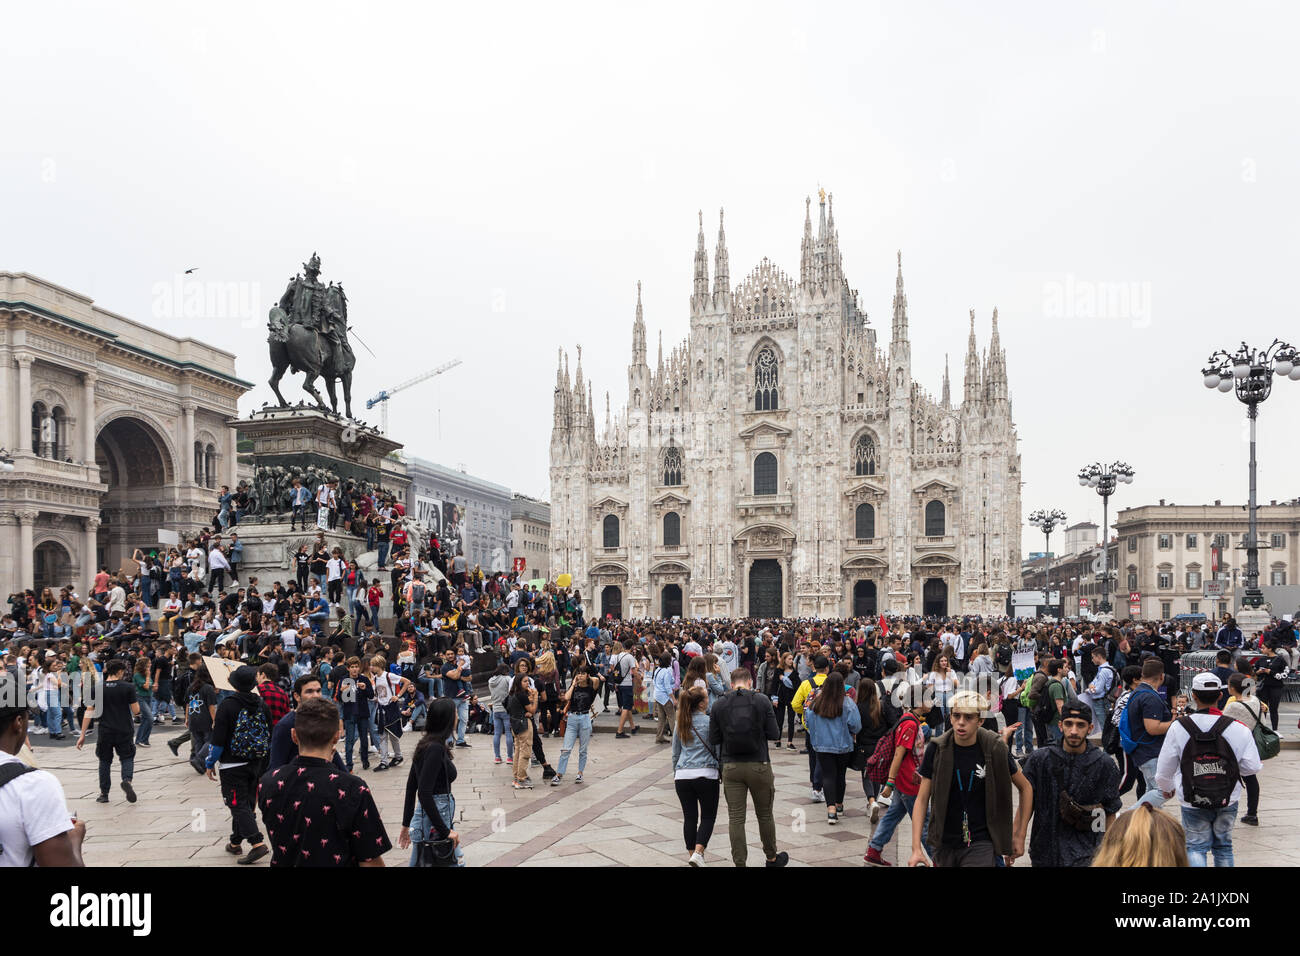 Milano,Italia - 27 settembre, 2019: Milano Piazza del Duomo, global strike per il cambiamento climatico. Venerdì per il futuro, con Greta Thunberg. Foto Stock